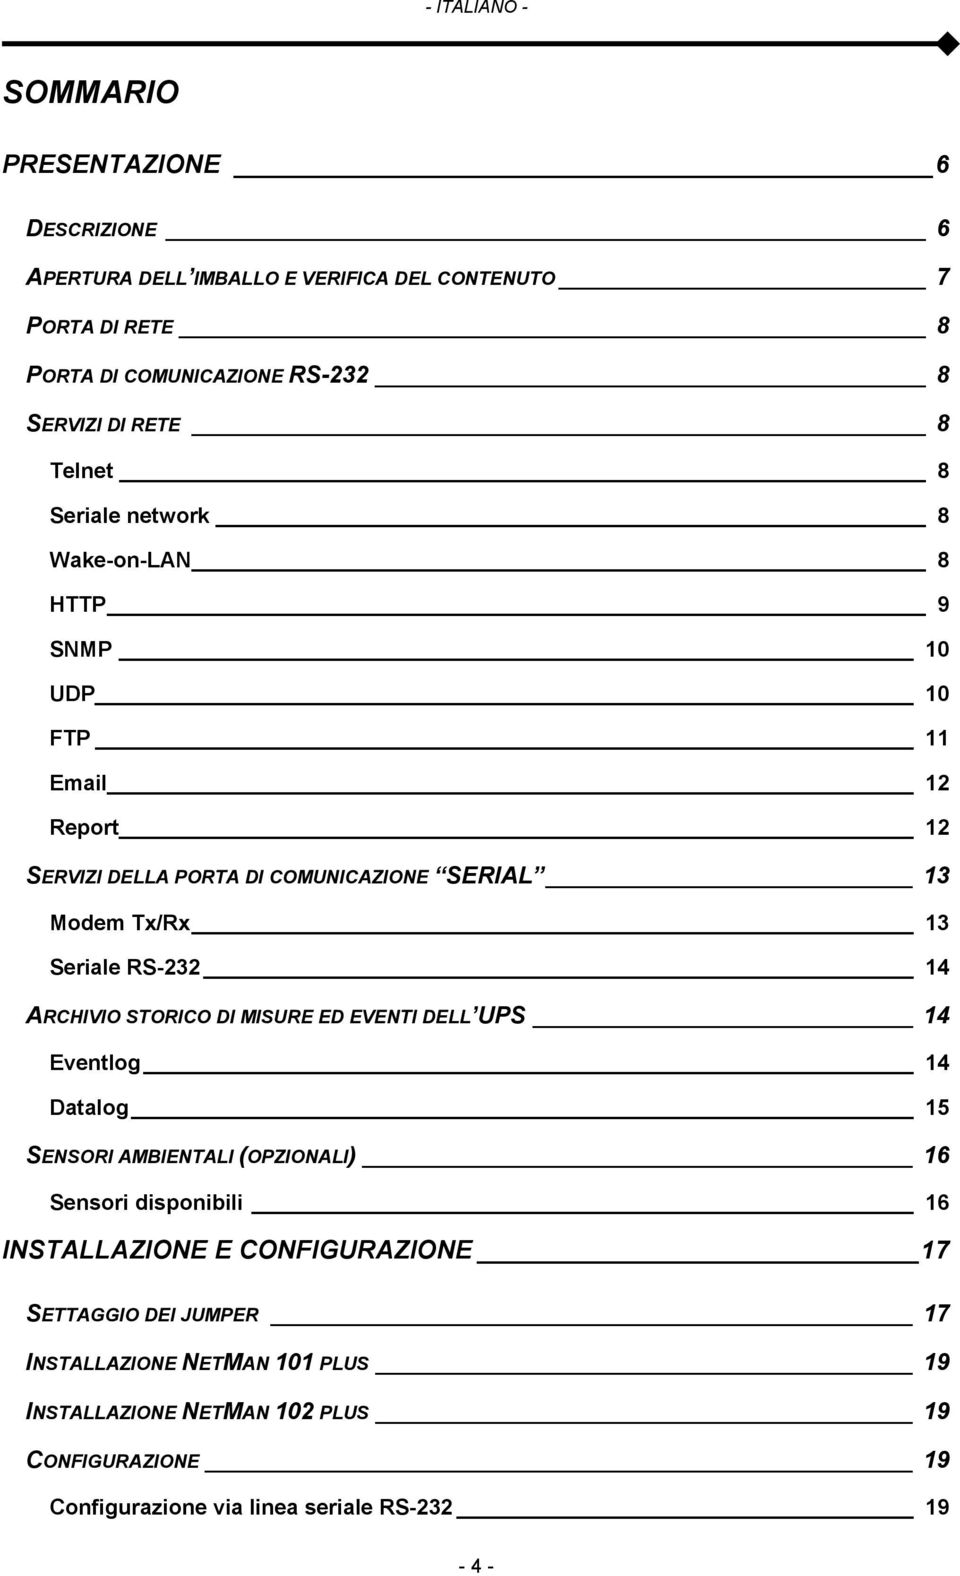 Seriale RS-232 14 ARCHIVIO STORICO DI MISURE ED EVENTI DELL UPS 14 Eventlog 14 Datalog 15 SENSORI AMBIENTALI (OPZIONALI) 16 Sensori disponibili 16 INSTALLAZIONE E